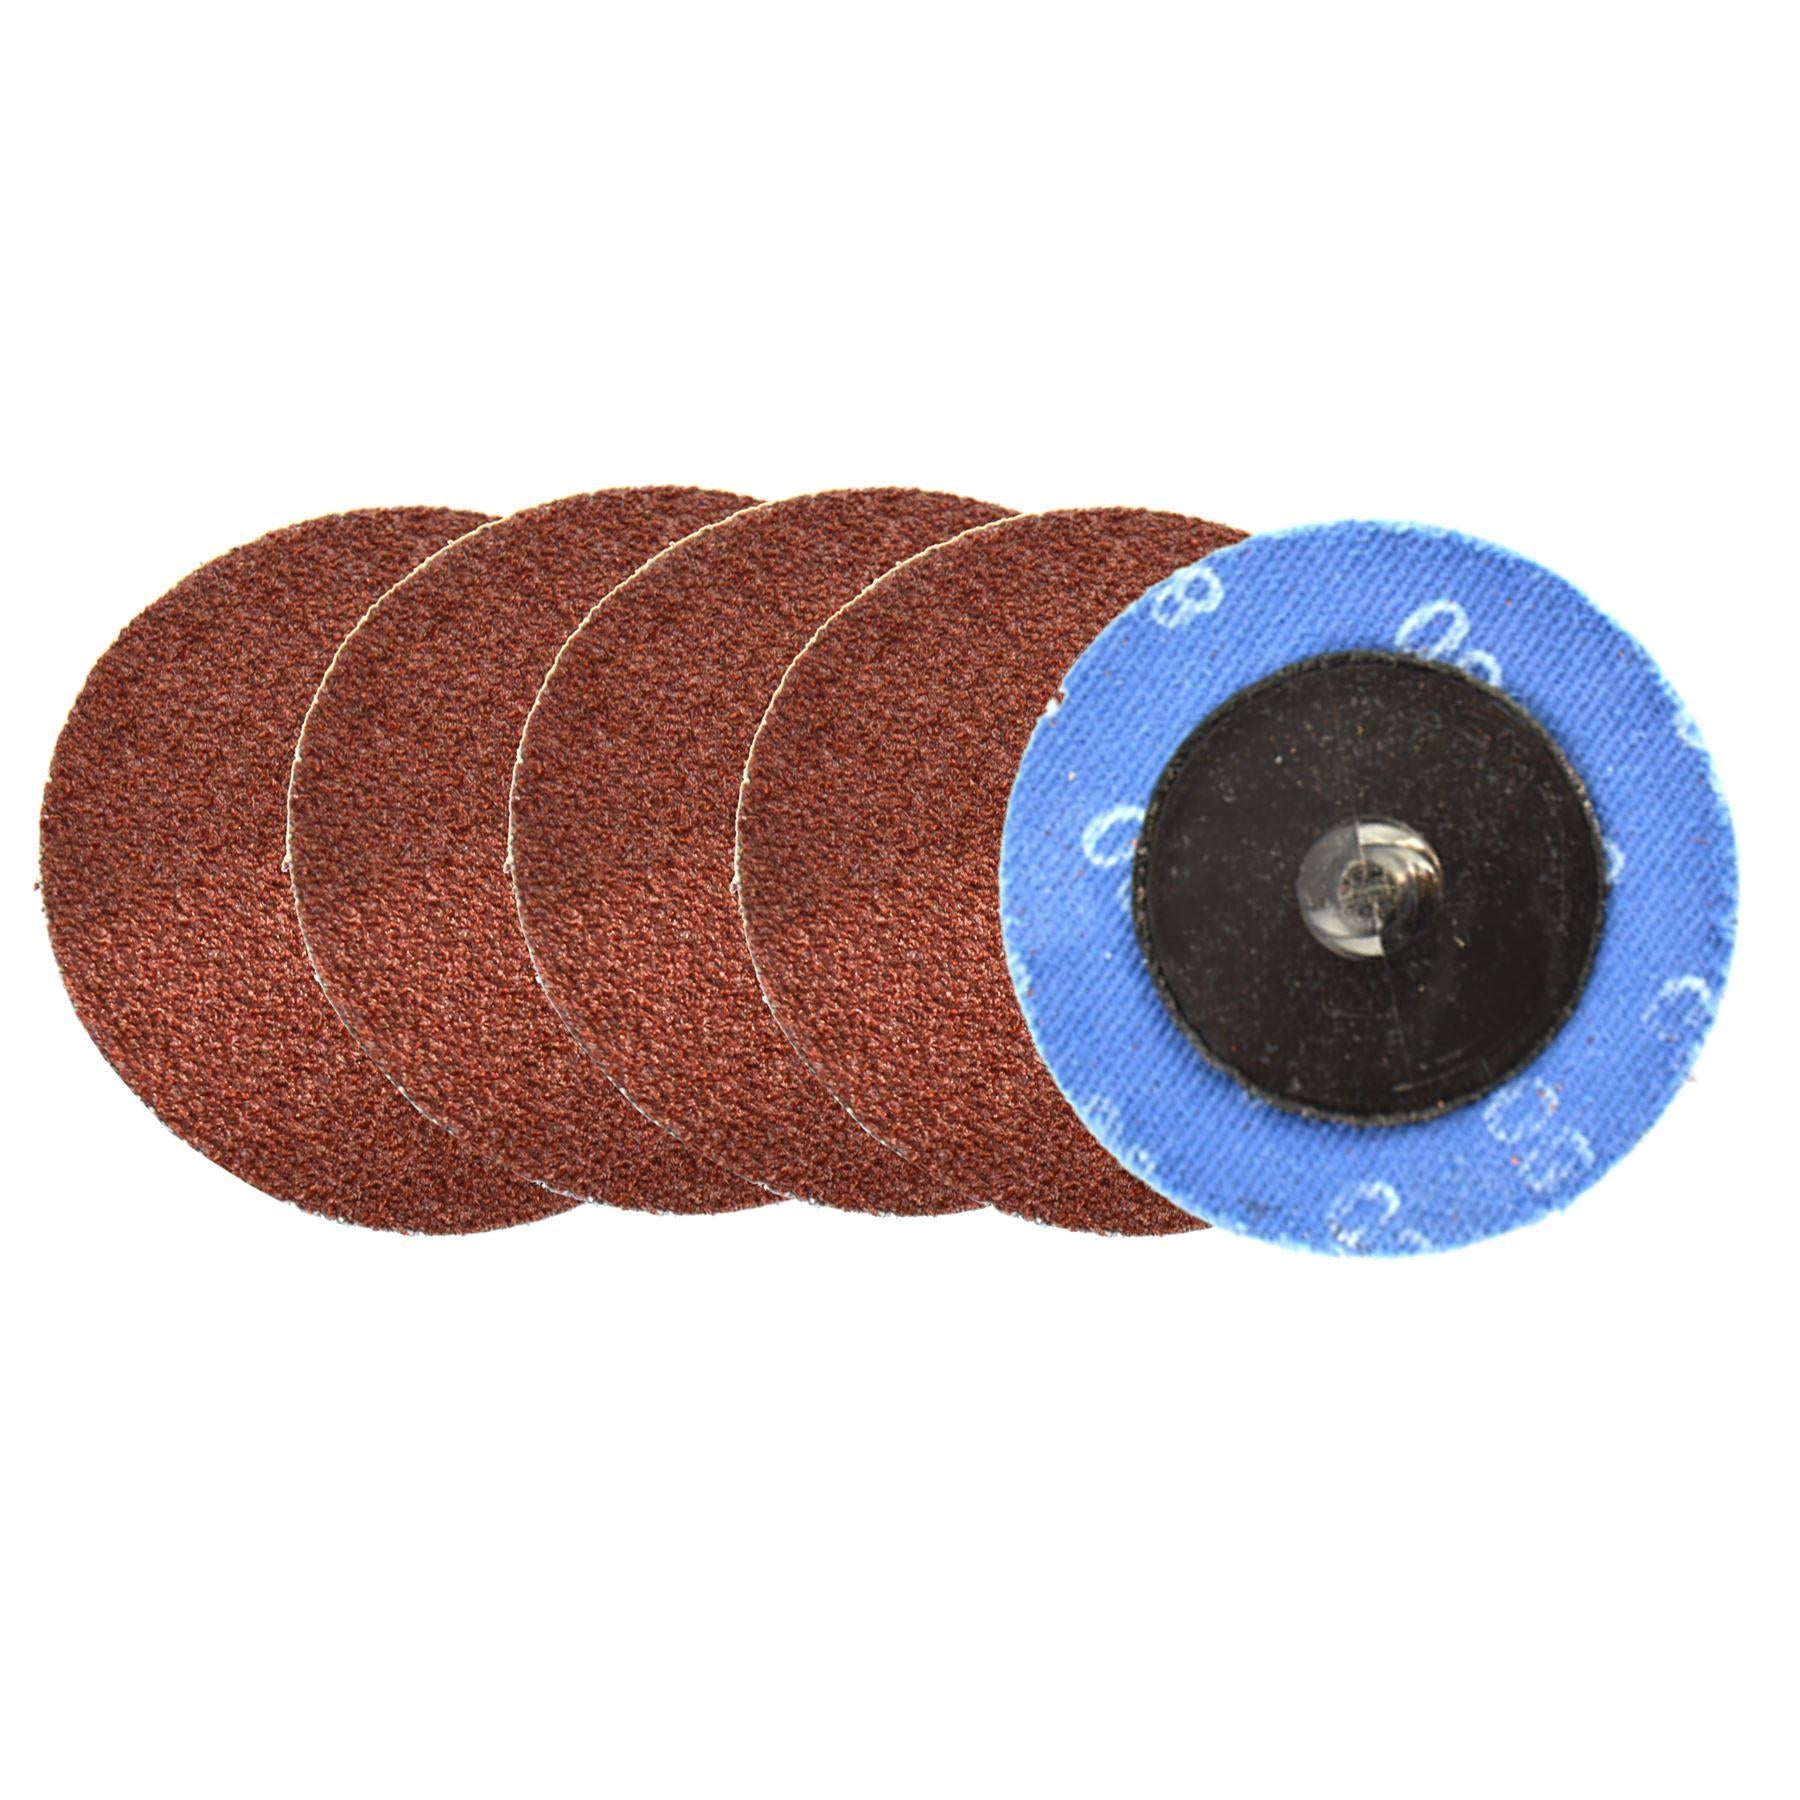 Flap Disc Set 50mm Twist Button Abrasive Discs Sanding